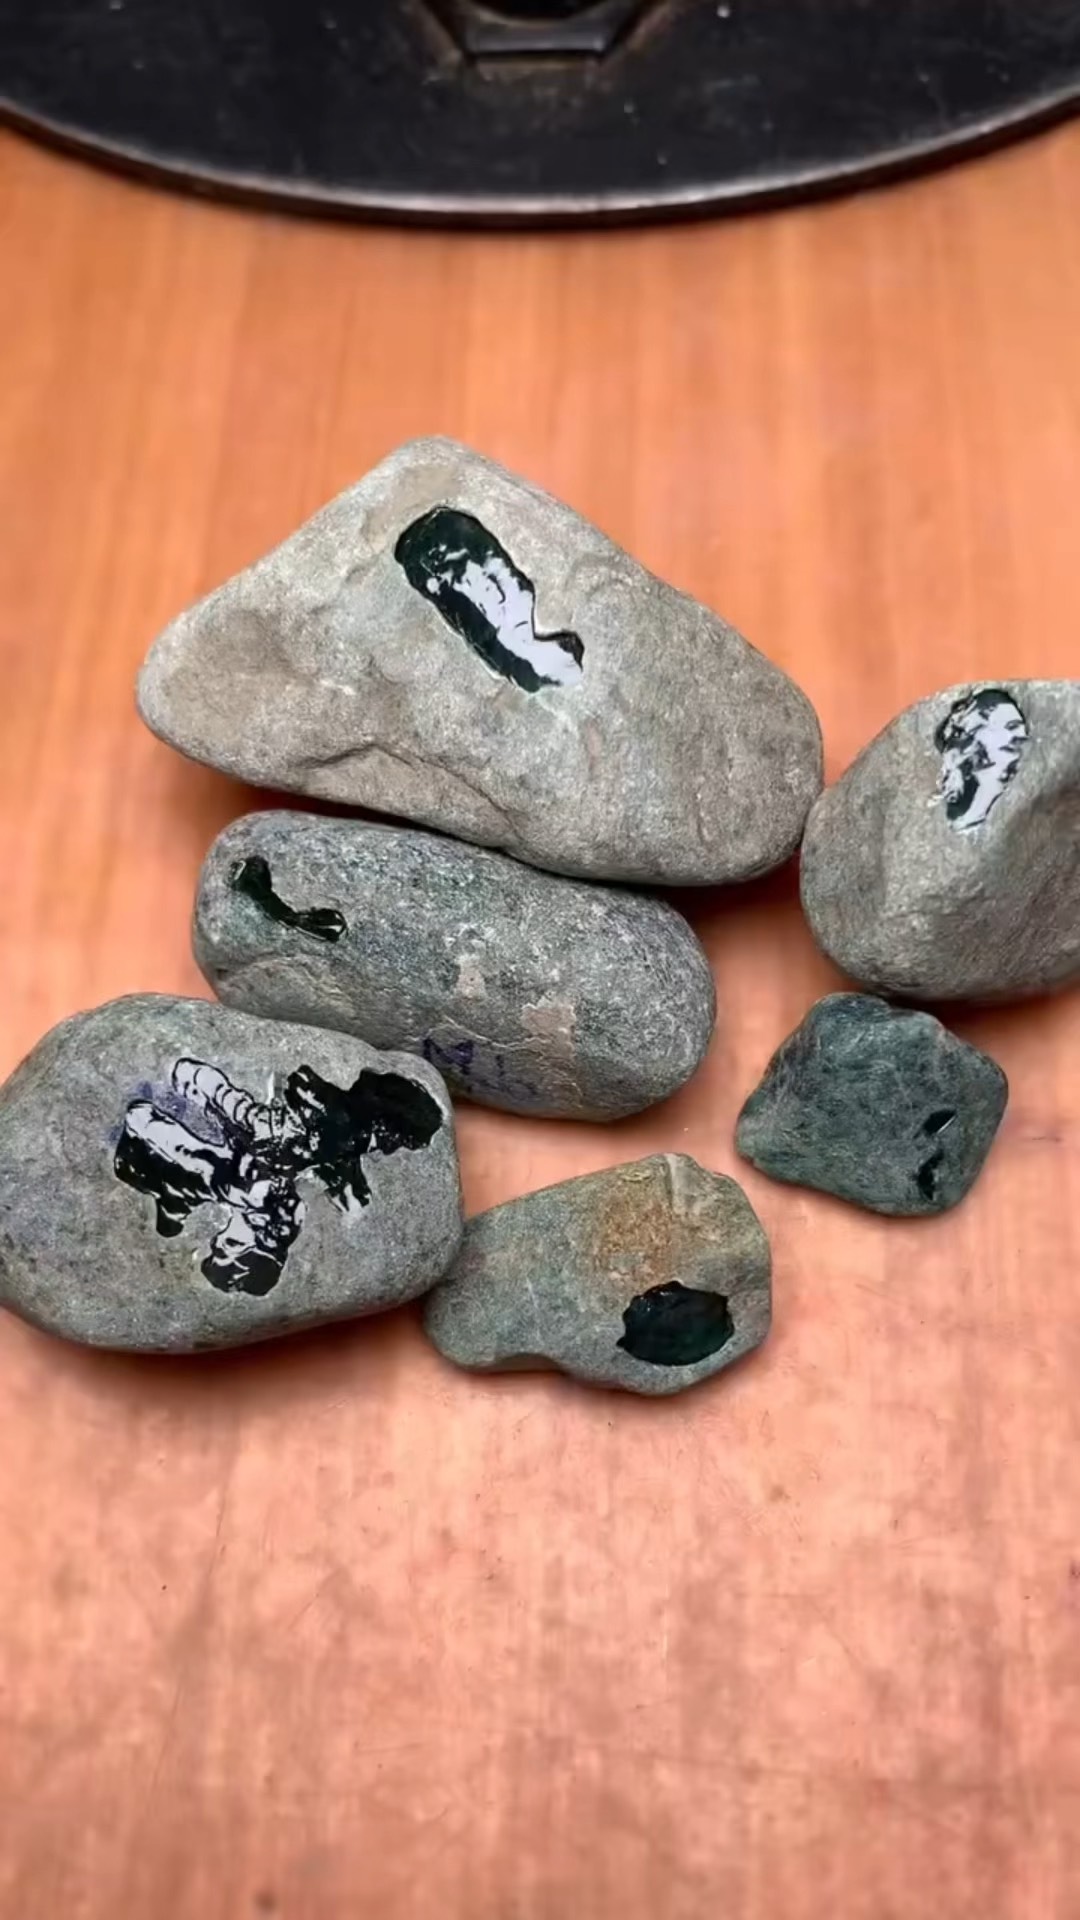 墨翠原石,看皮壳你能分辨出是哪个场地吗?喜欢墨翠敬请关注